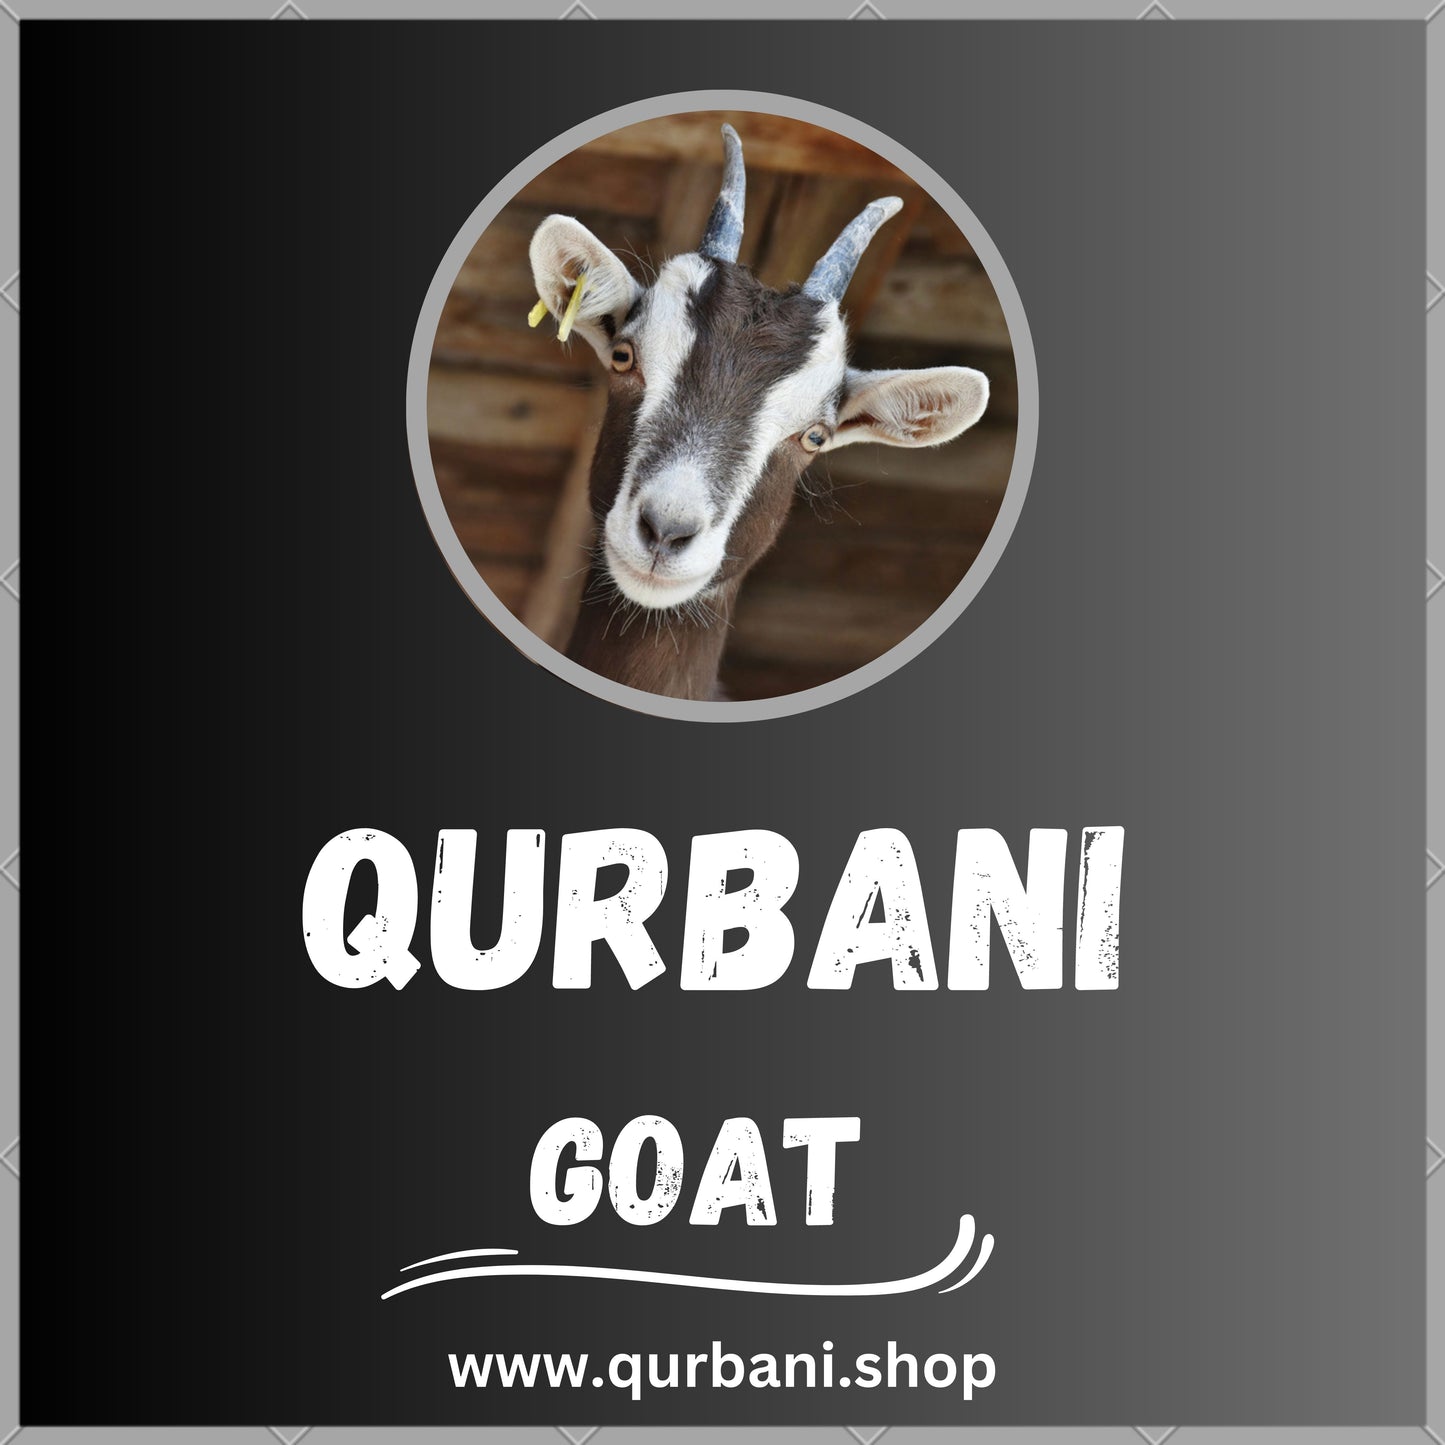 Premium Qurbani Services in UAE - Order Your Eid-ul-Adha Sacrifice